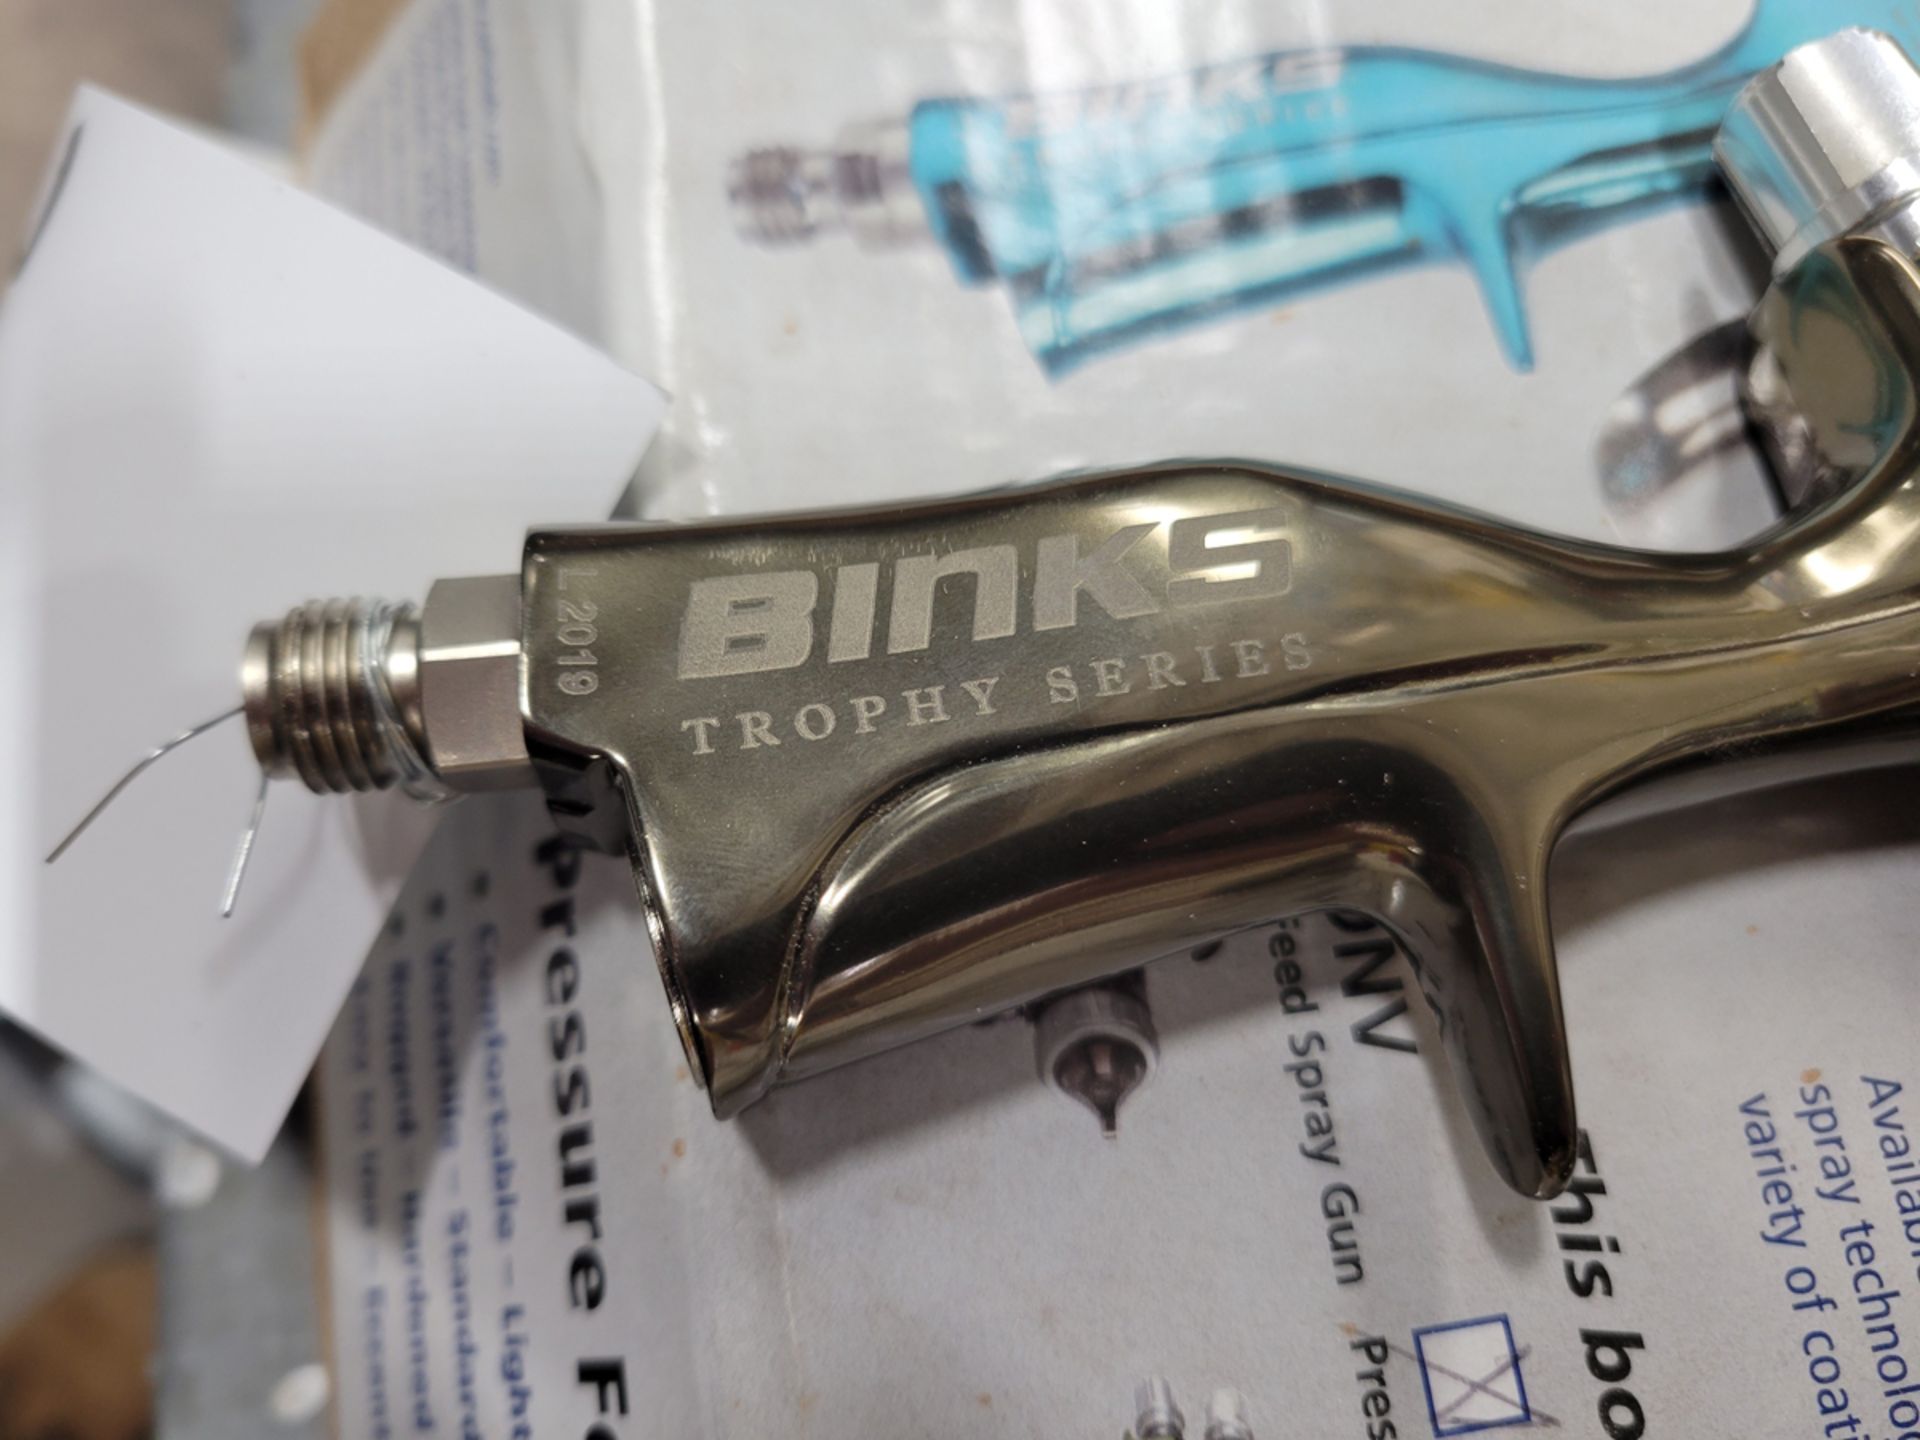 Binks Trophy Series LVMP Paint Spray Gun - Image 6 of 6